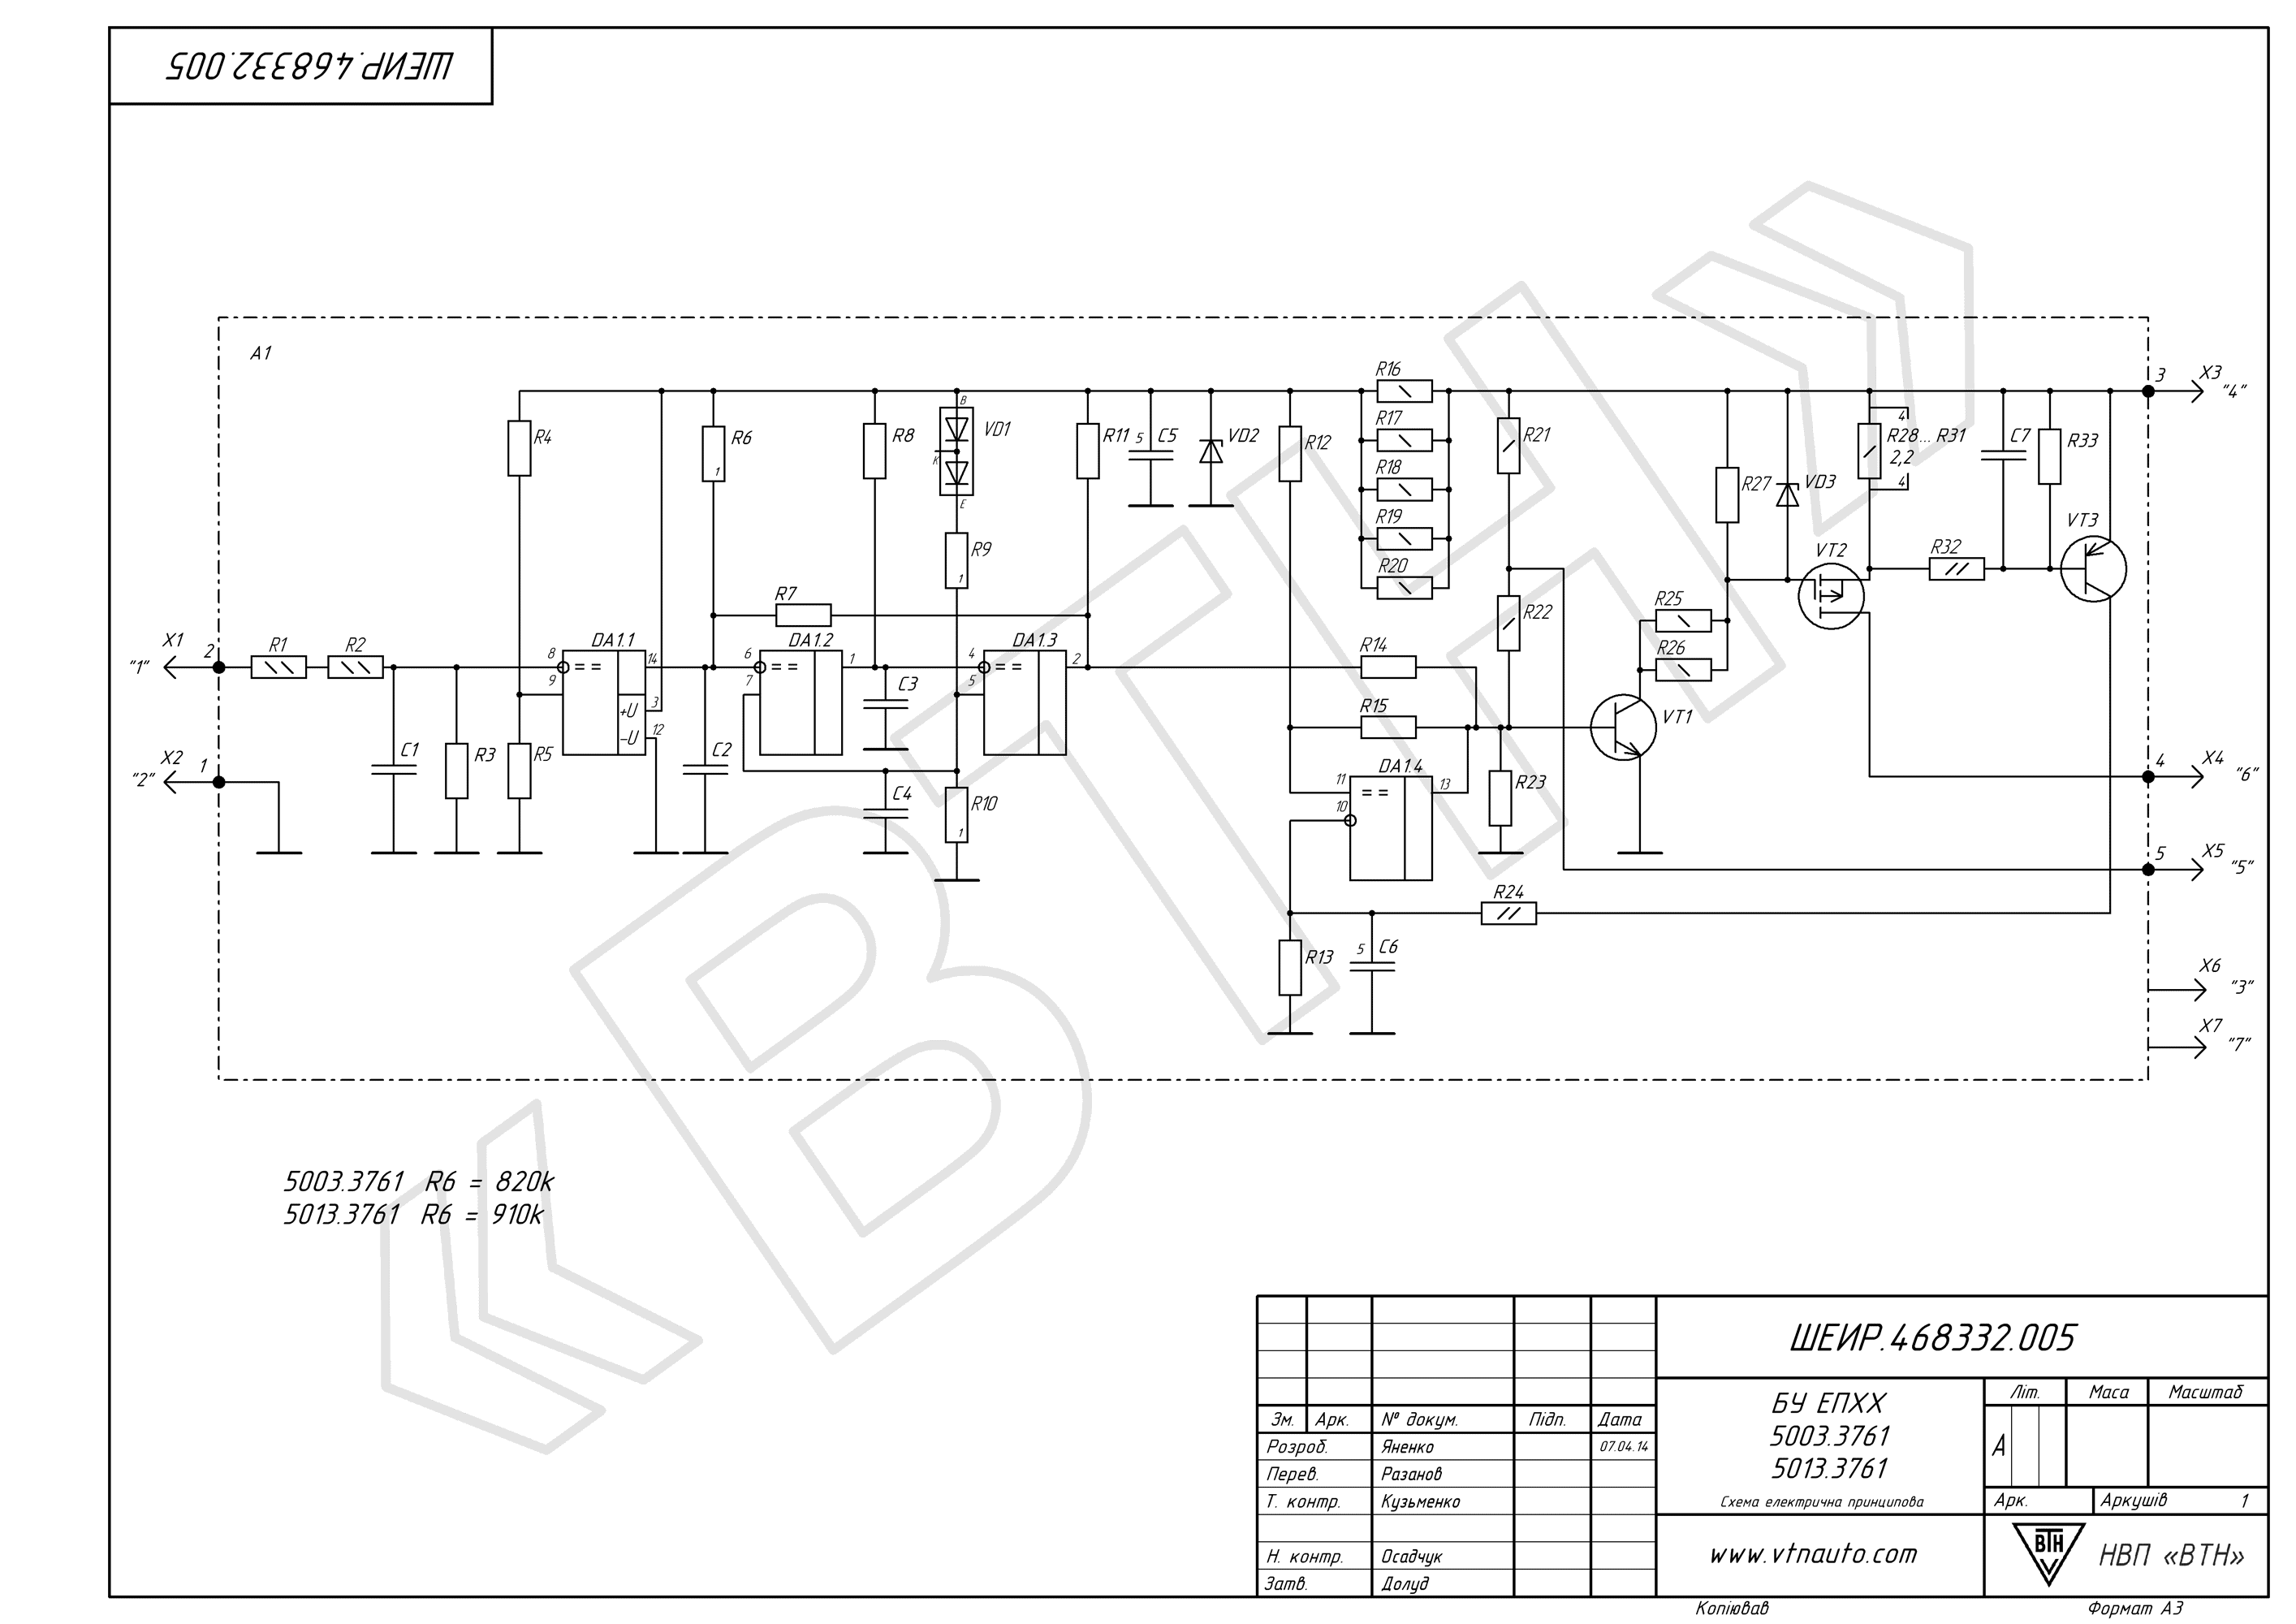 Circuit diagram of 5013.3761